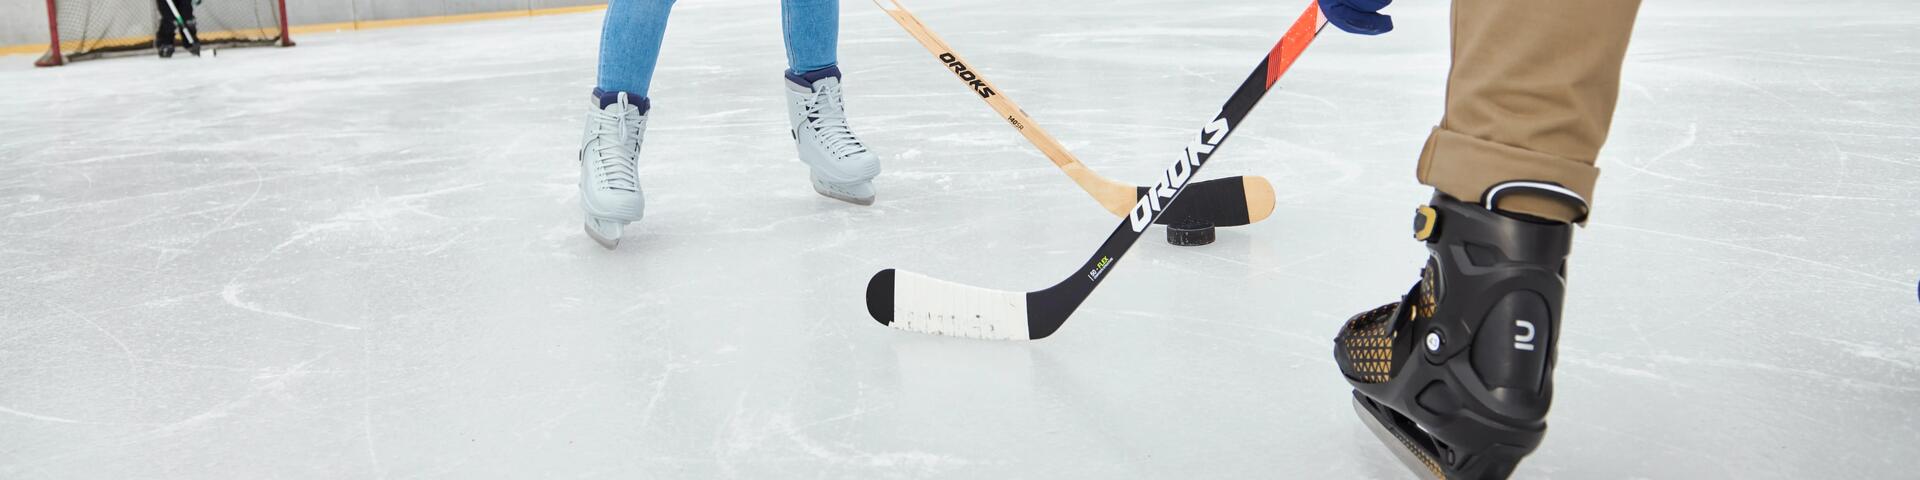 2 osoby grające w hokeja na lodzie